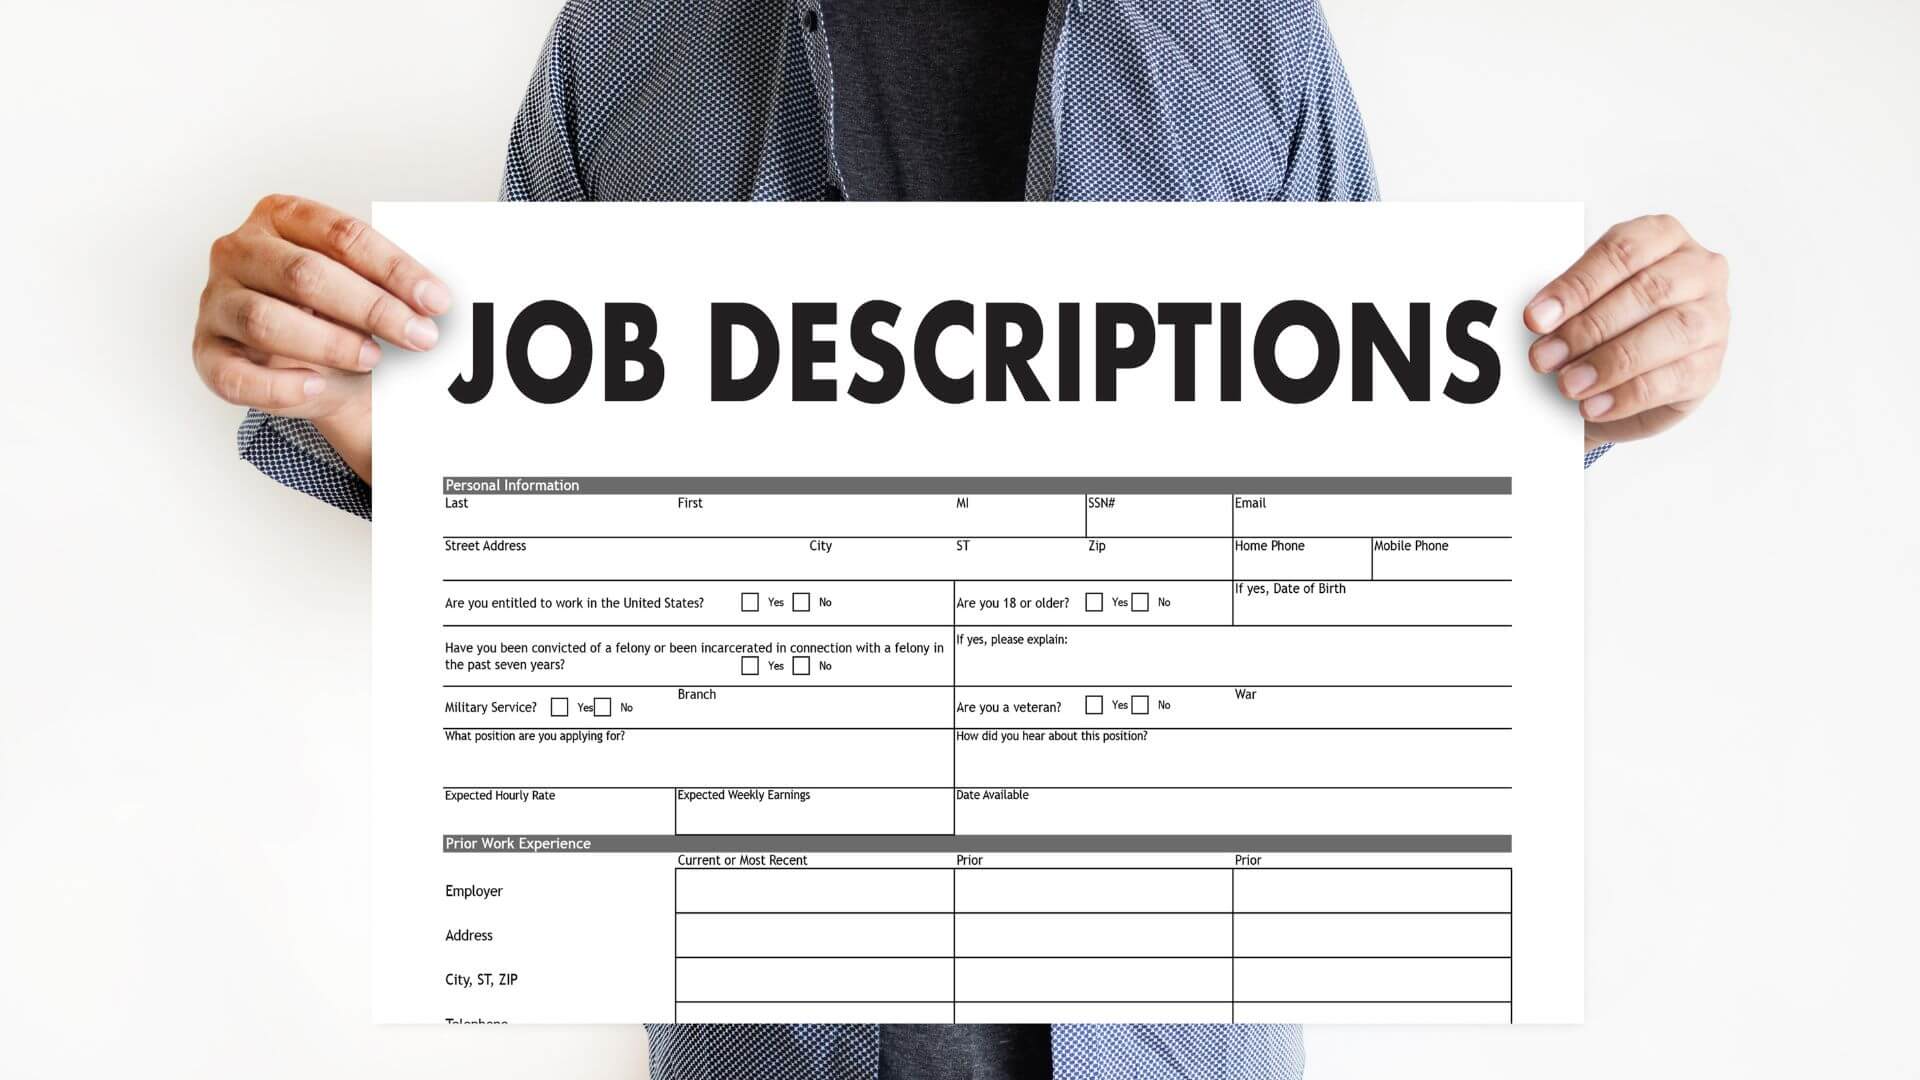 Review the Job Description